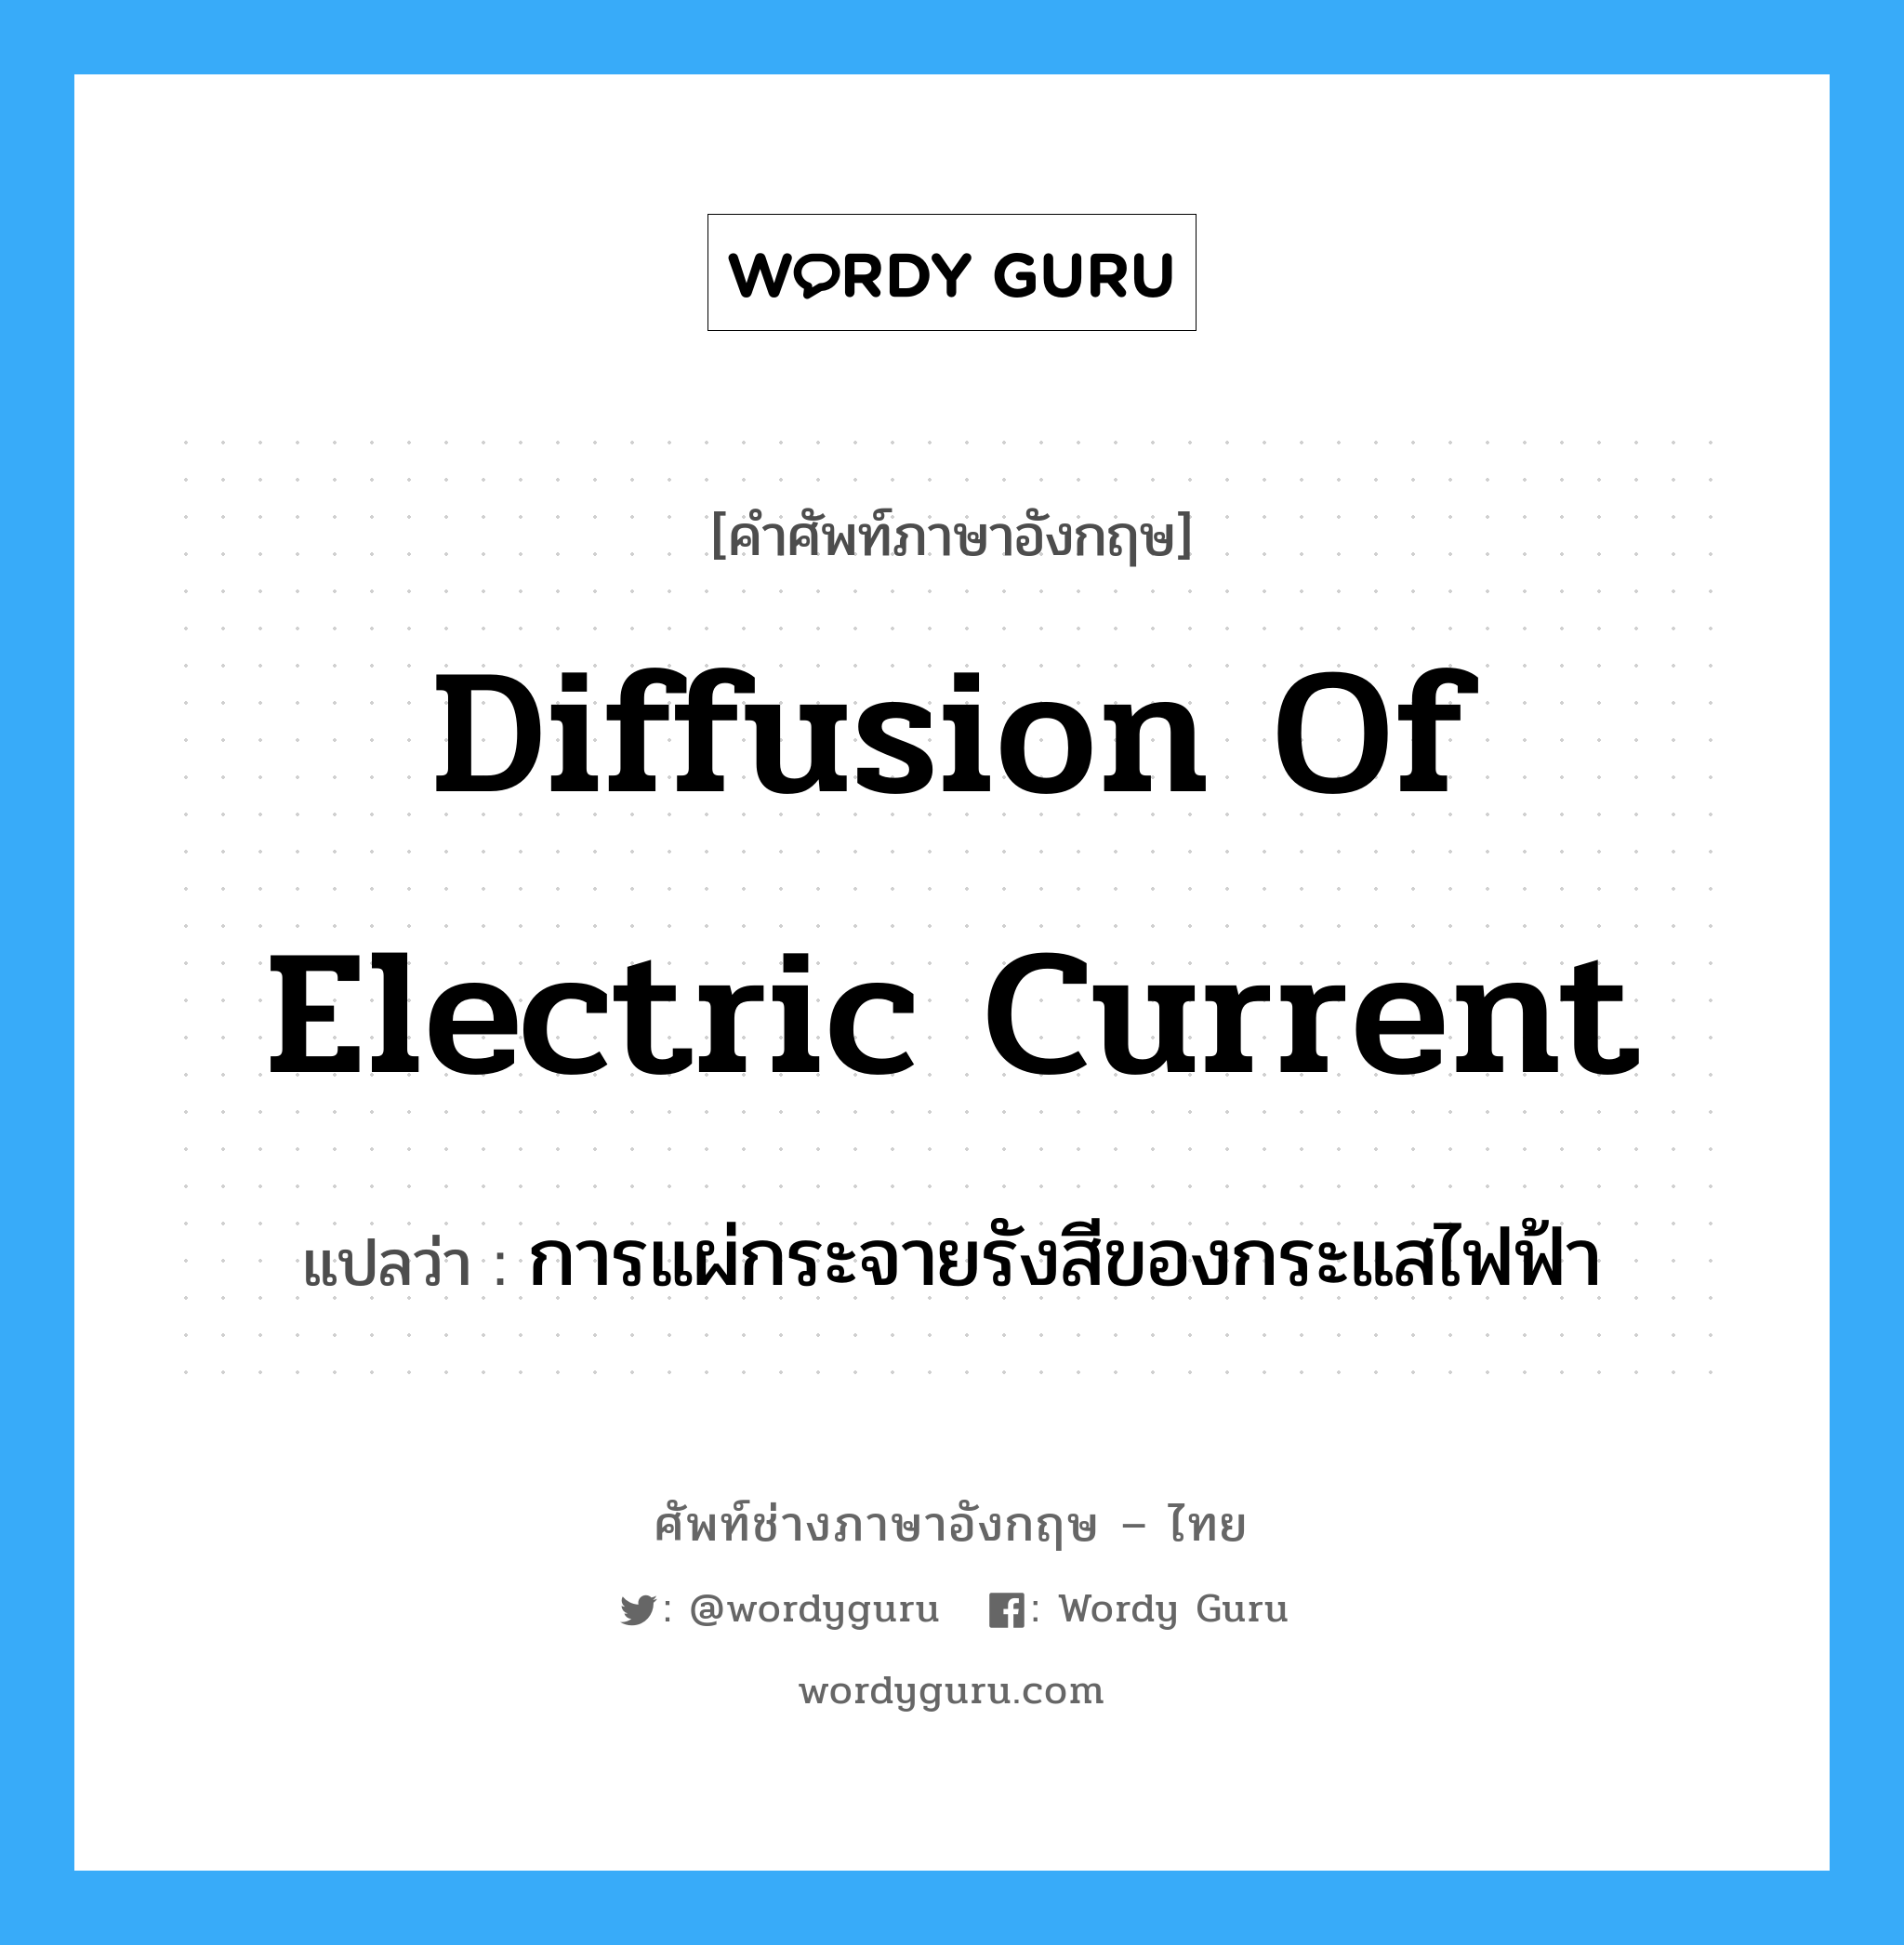 diffusion of electric current แปลว่า?, คำศัพท์ช่างภาษาอังกฤษ - ไทย diffusion of electric current คำศัพท์ภาษาอังกฤษ diffusion of electric current แปลว่า การแผ่กระจายรังสีของกระแสไฟฟ้า